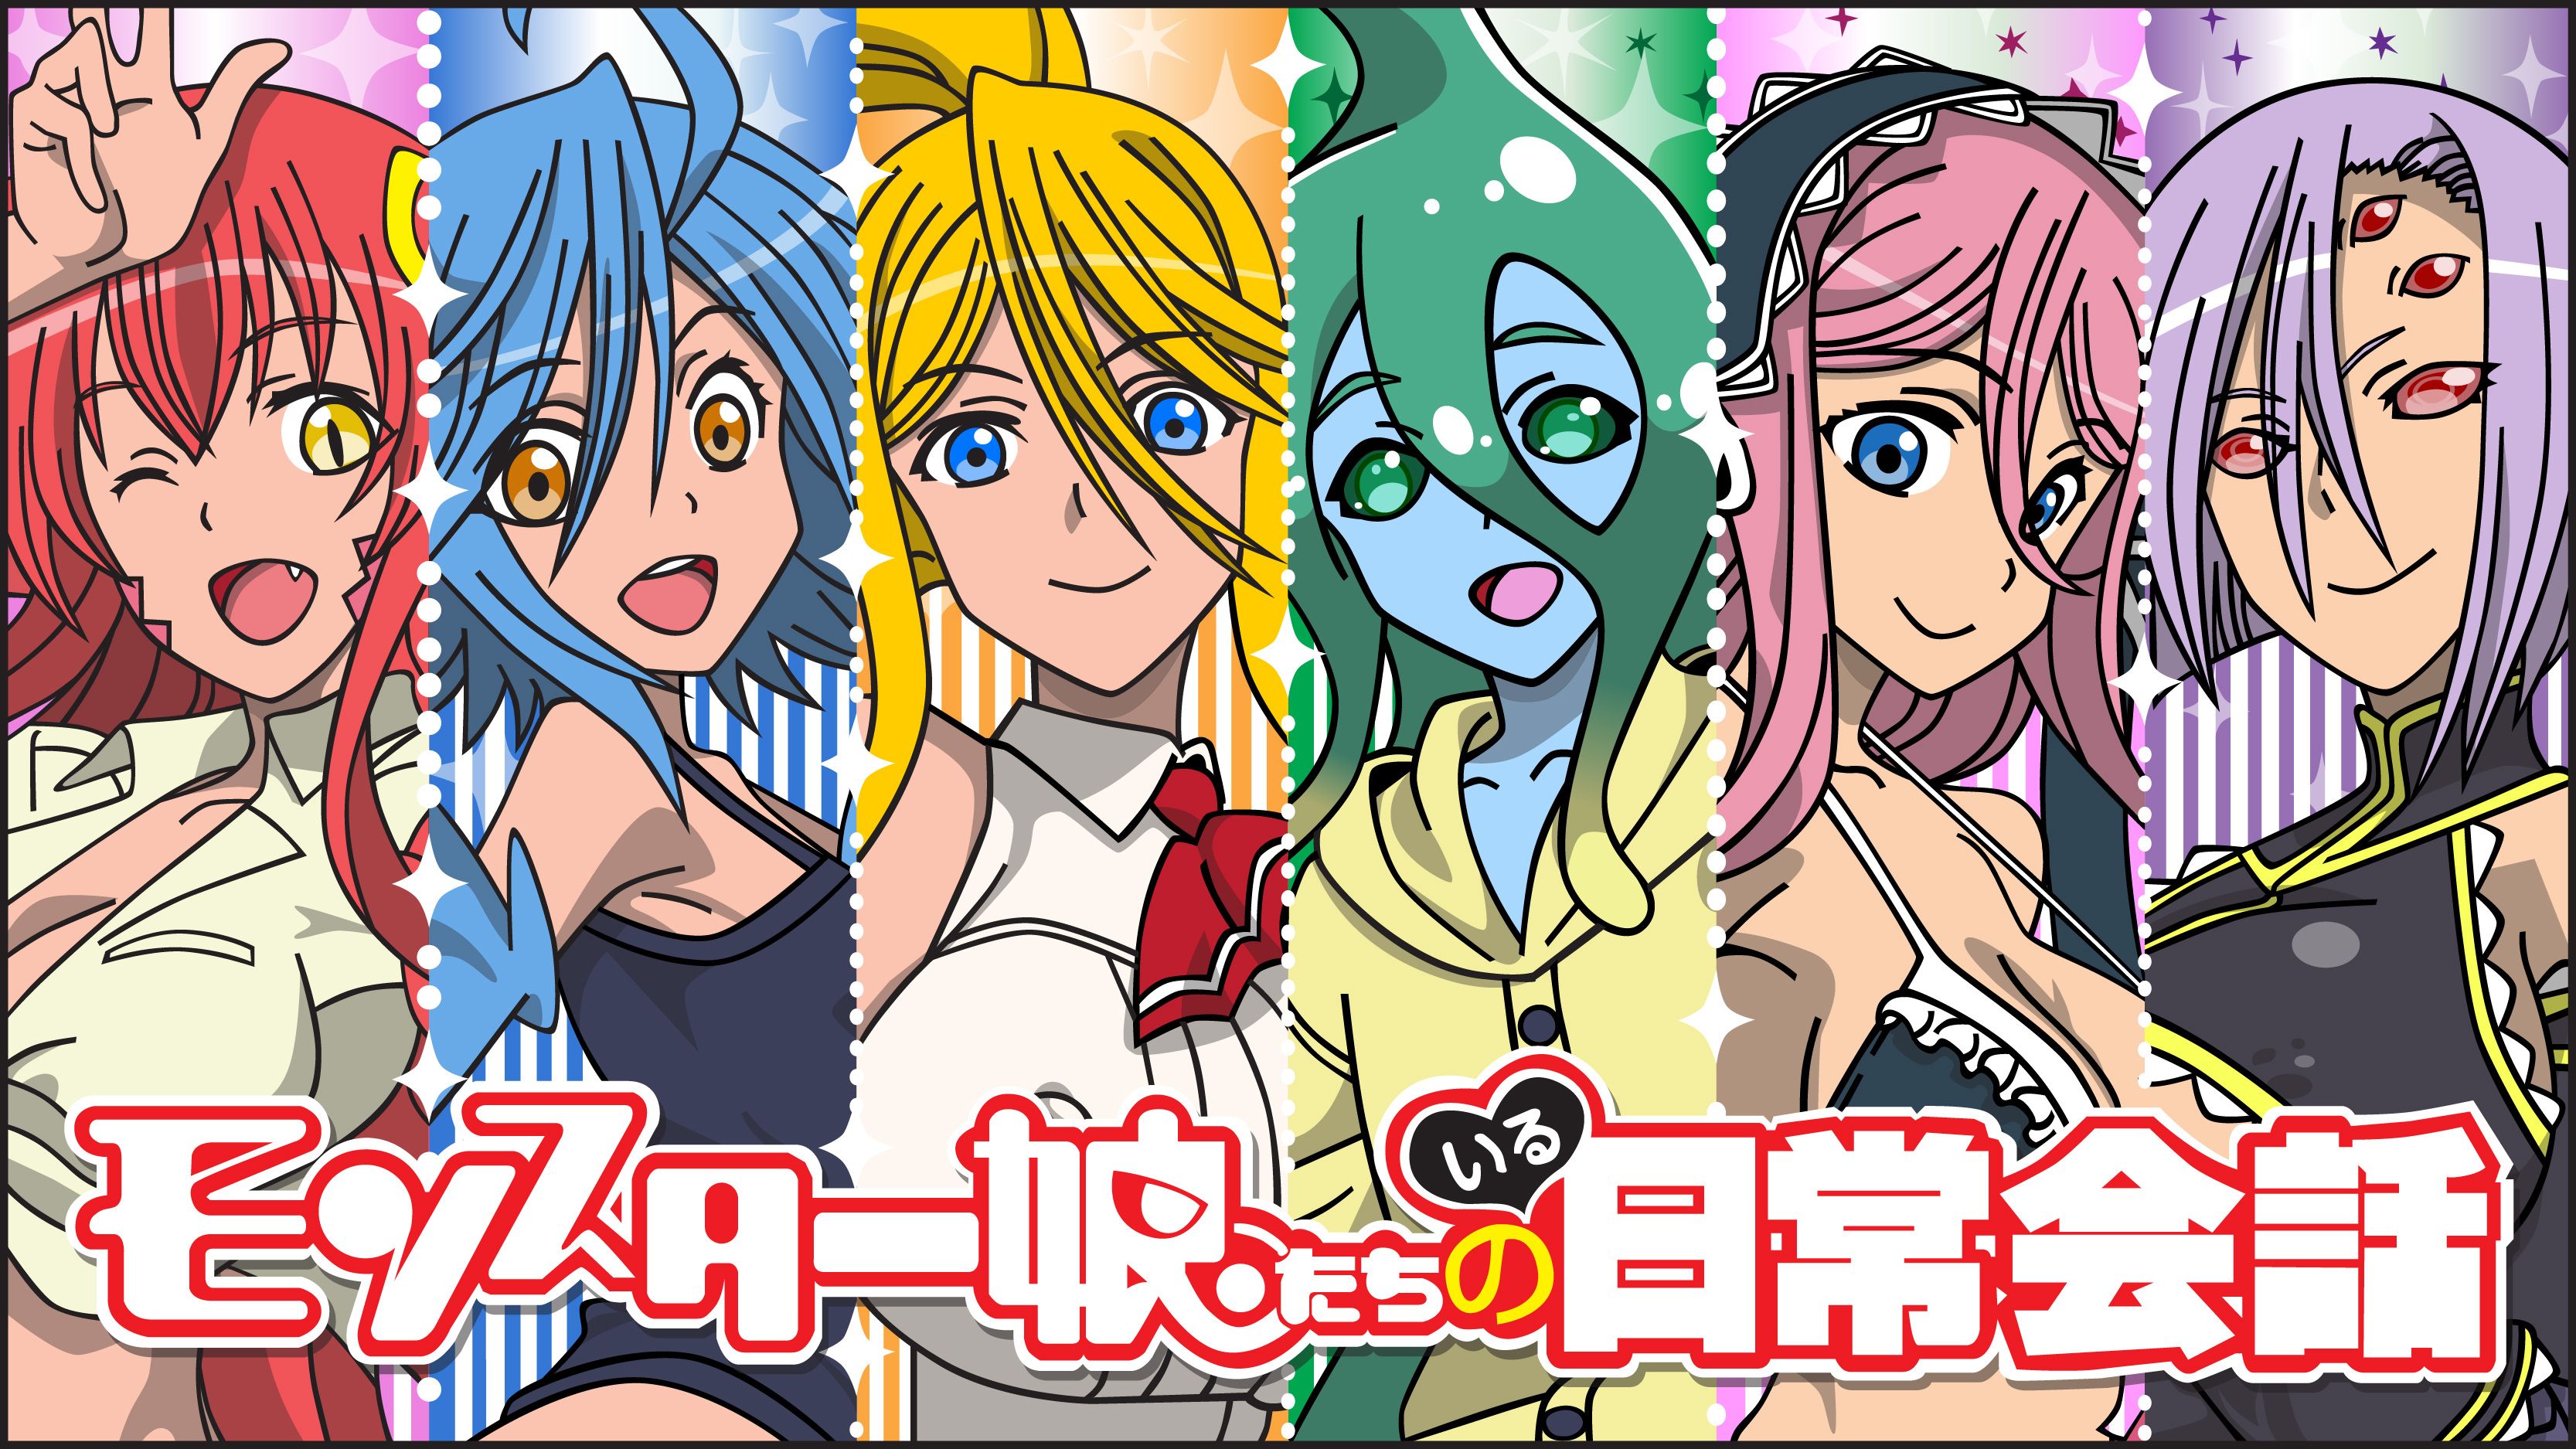 Anime picture monster musume no oisha-san 4090x5915 668369 en